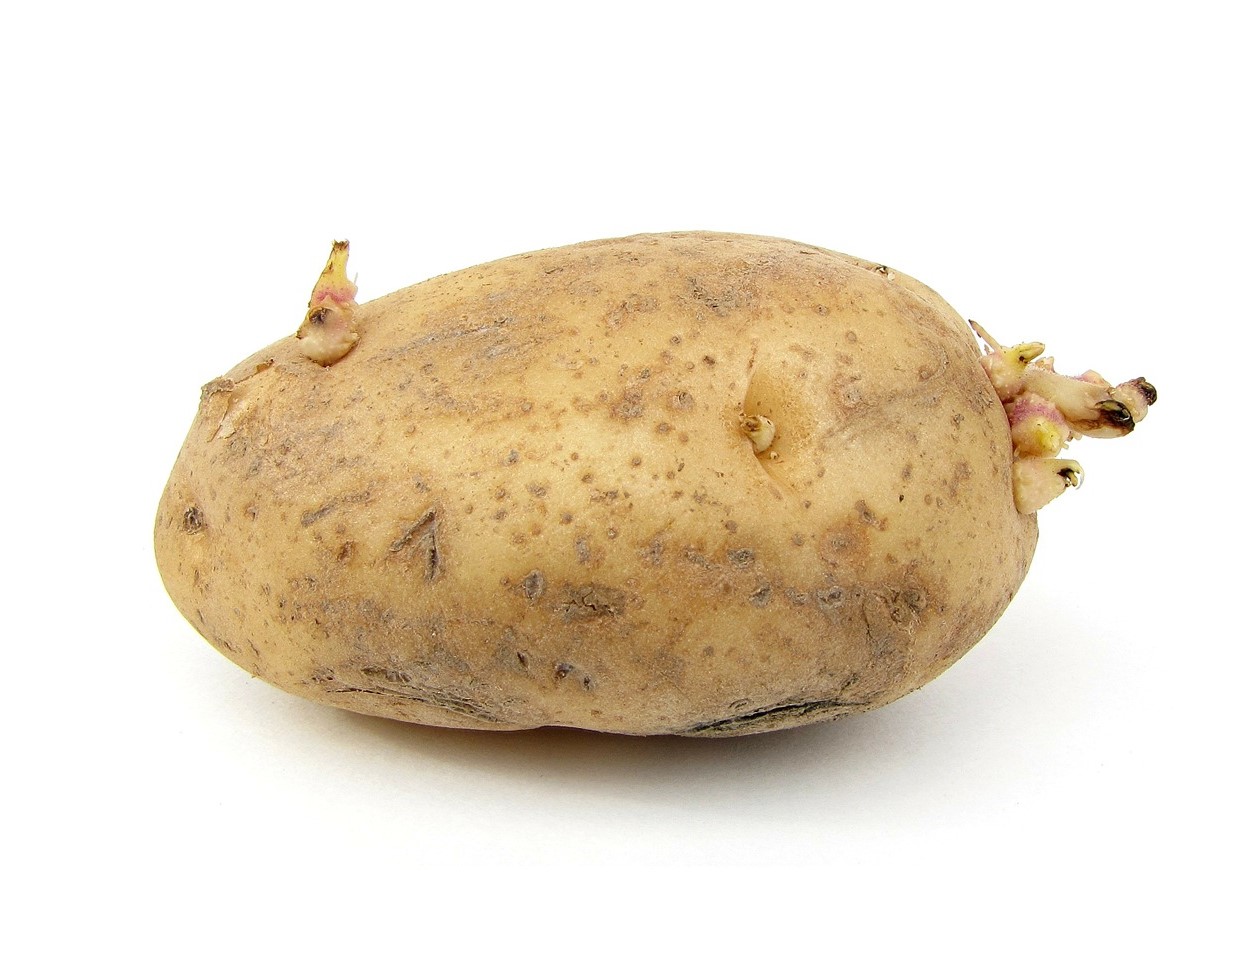 Картошка с глазками. Клубень картофеля. Картофель клубненосный. Клубень картофеля побег. Глазки картофеля.